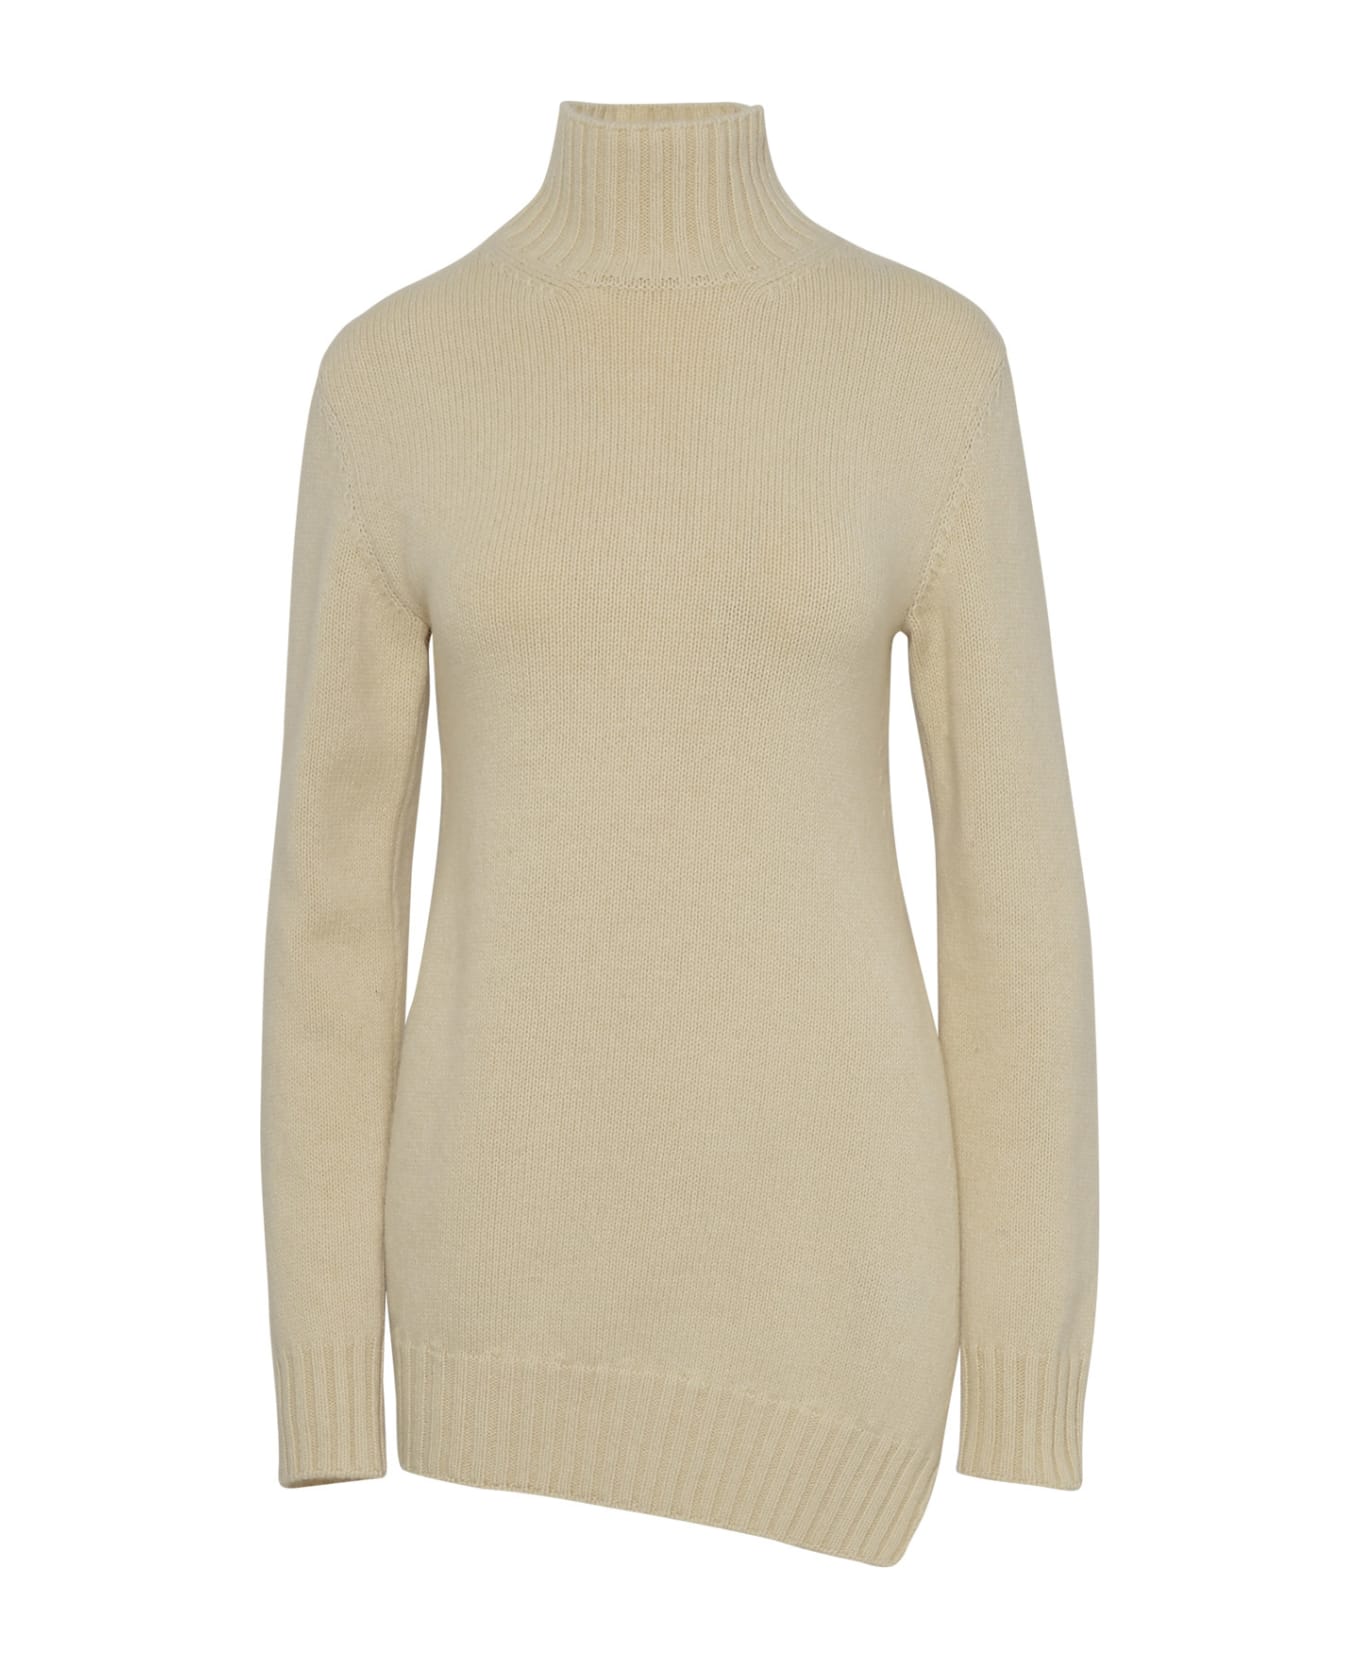 Jil Sander Ivory Yack Blend Turtleneck Sweater - Cream ニットウェア